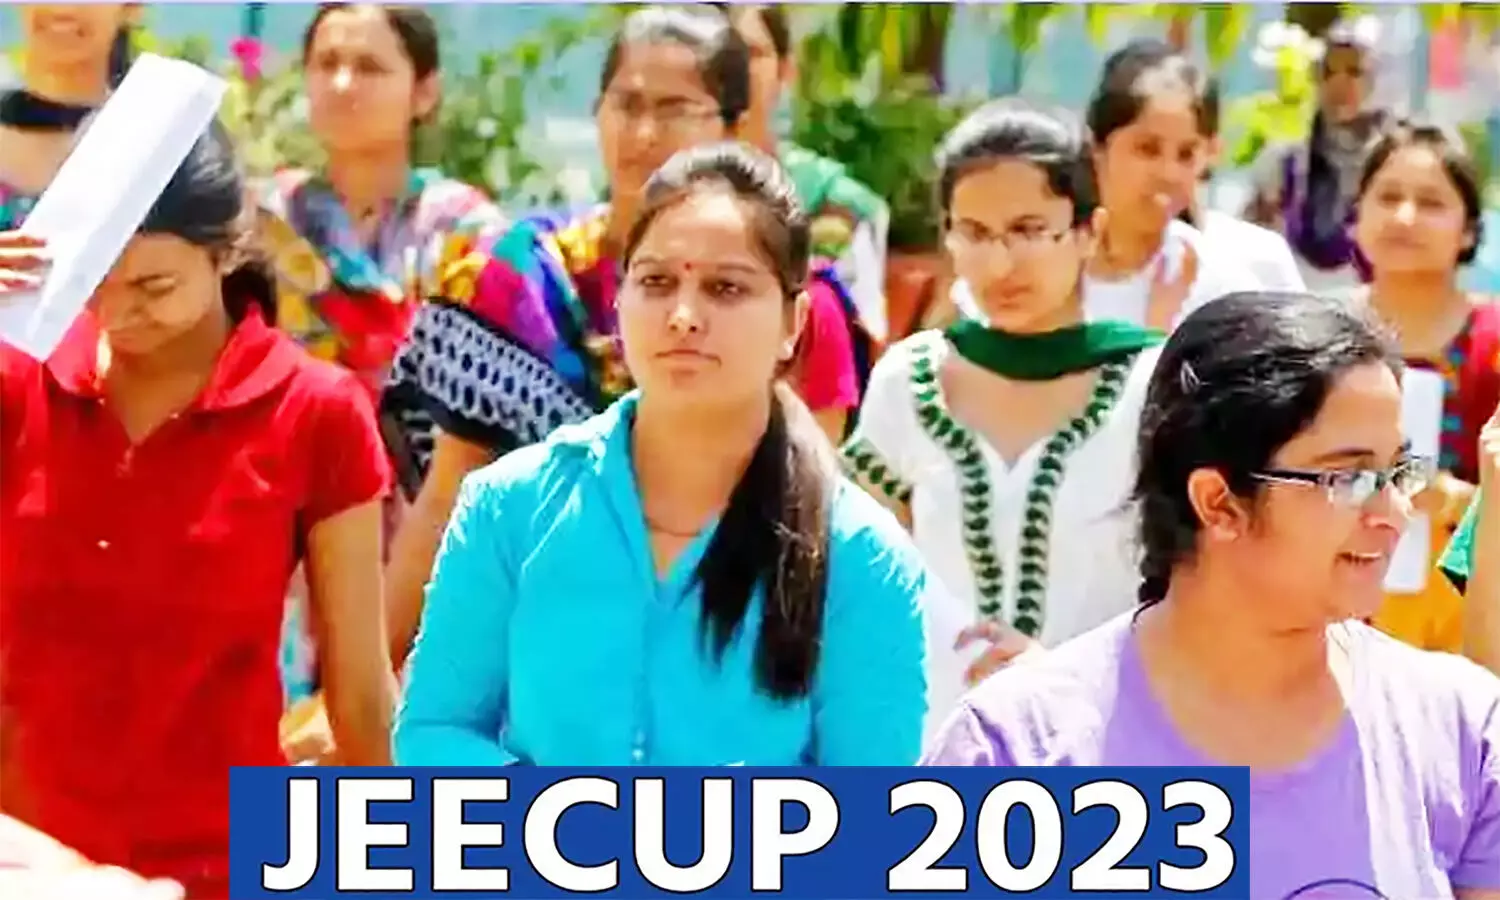 JEECUP 2023 Registration: यूपी जेईई के लिए रजिस्ट्रेशन प्रक्रिया प्रारंभ, कब होंगे एग्जाम जान लें